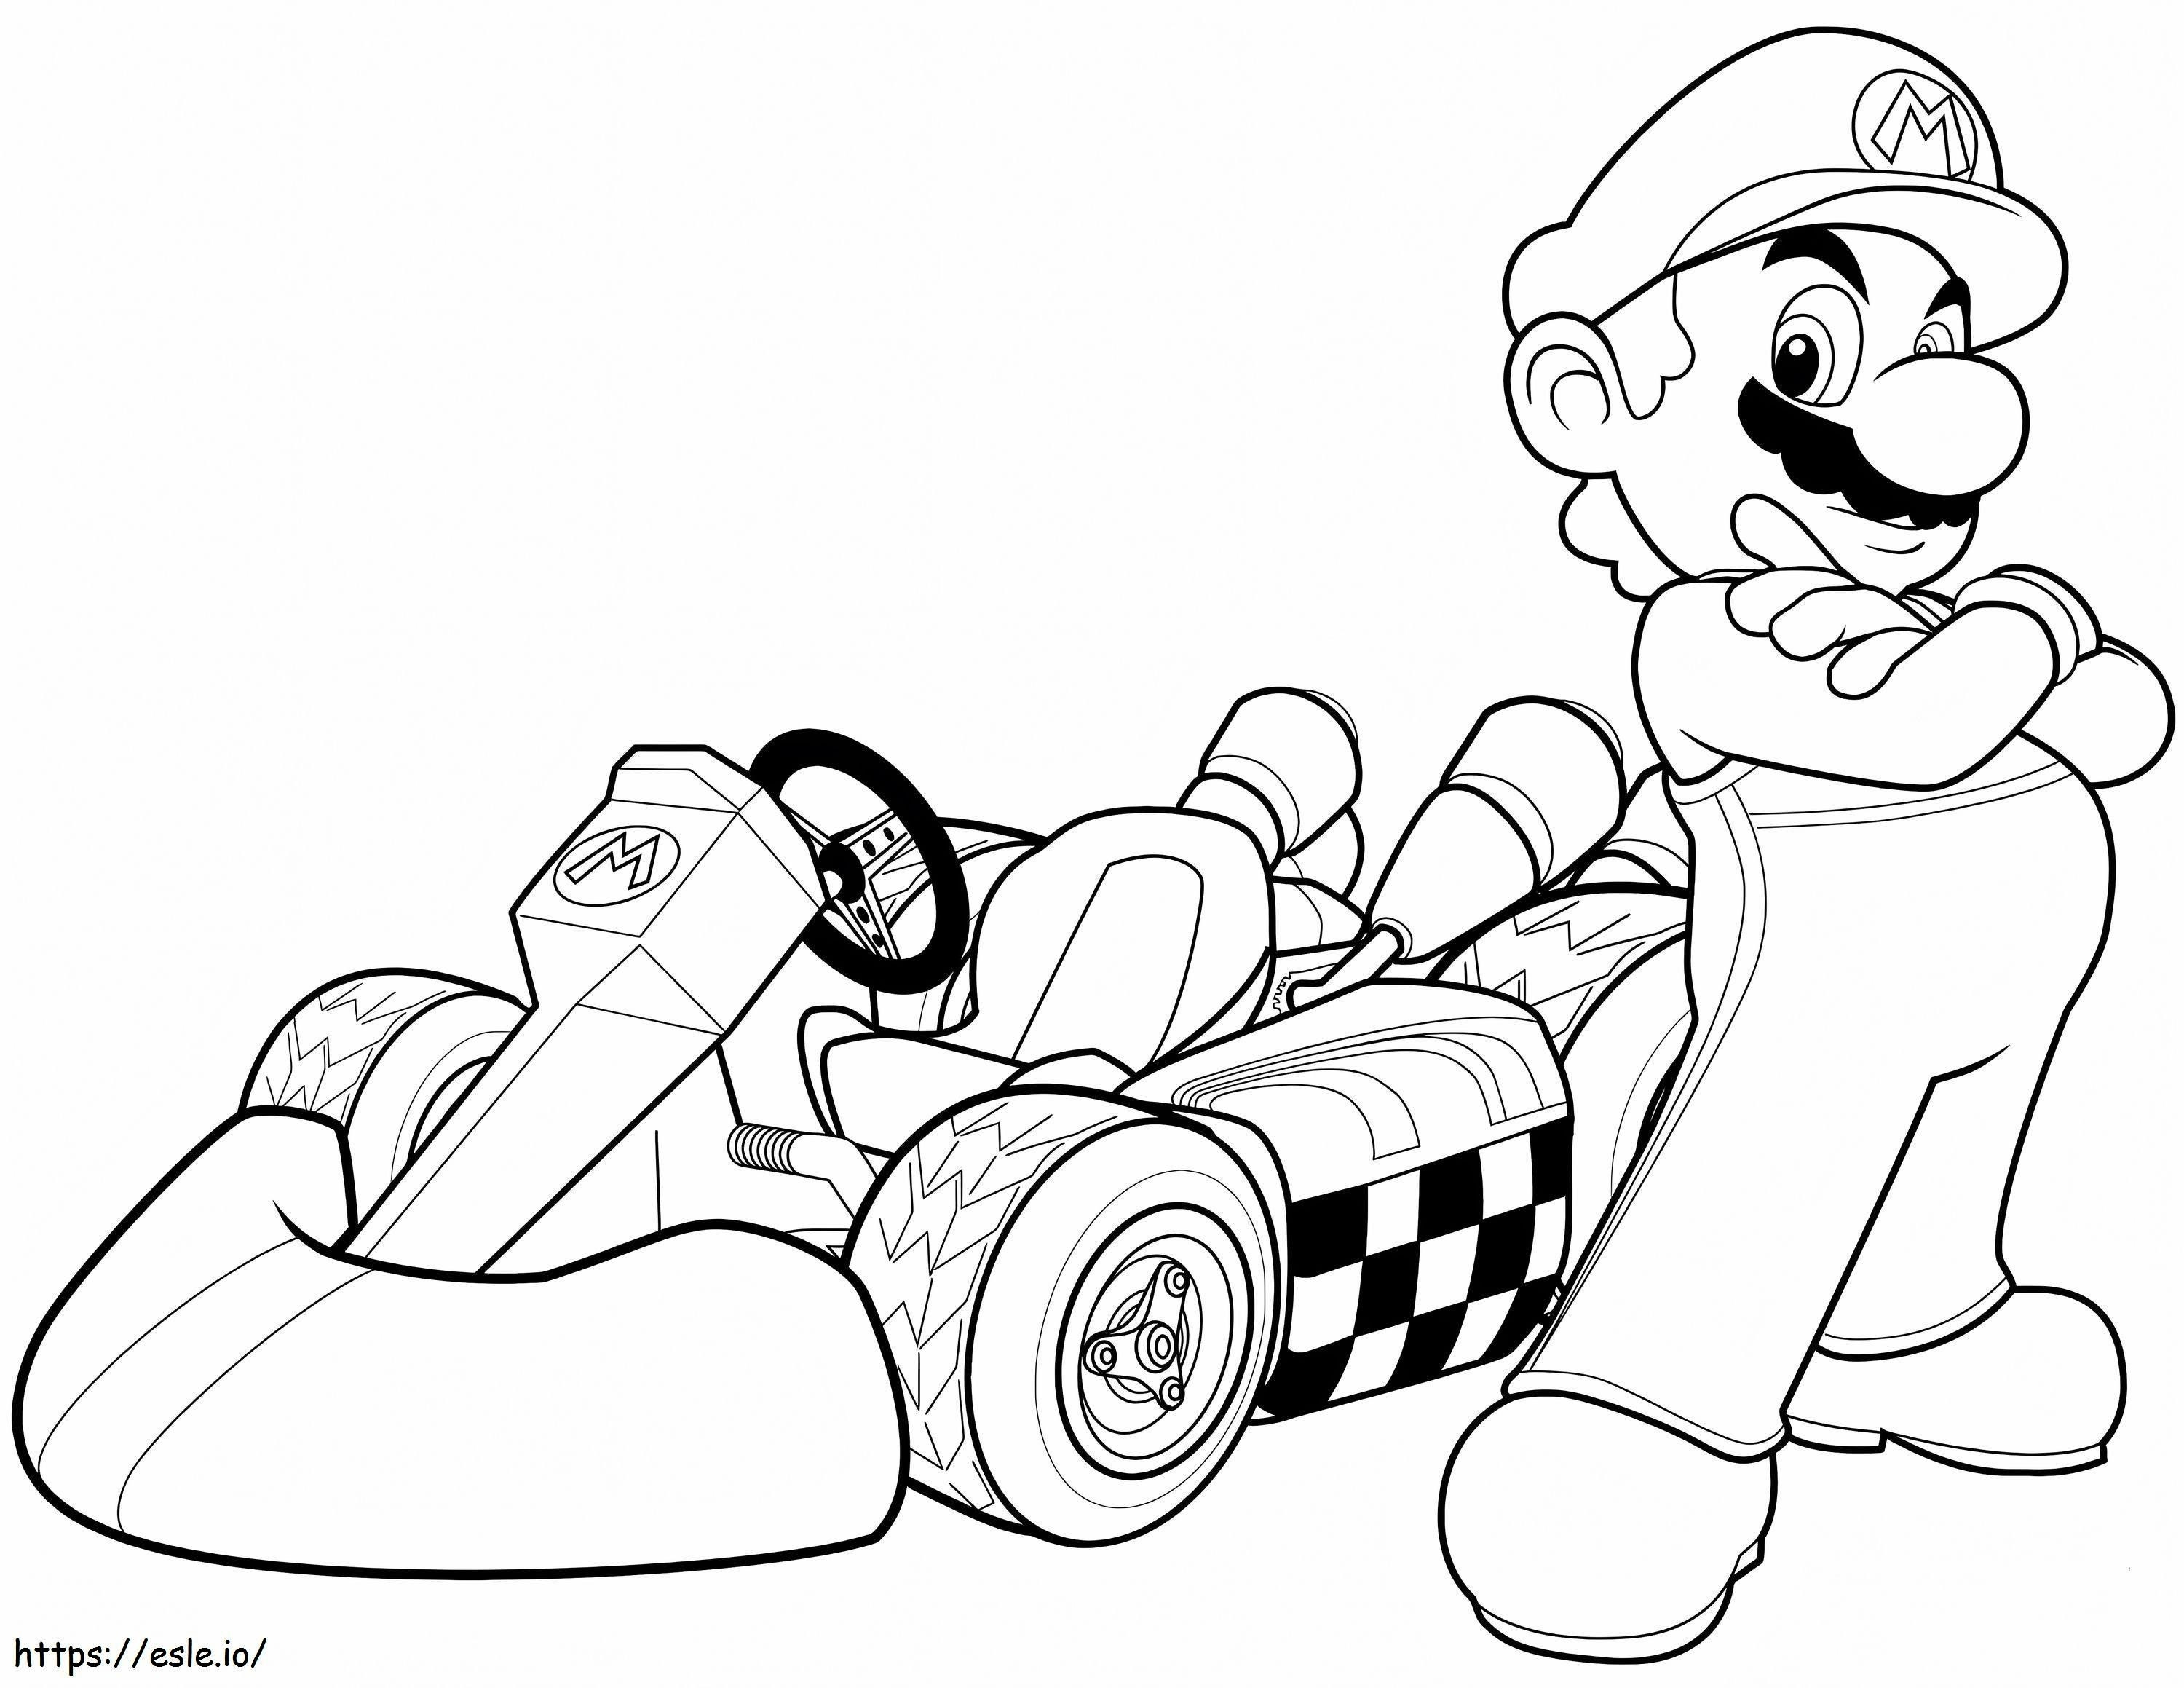 Rennjunge Mario ausmalbilder